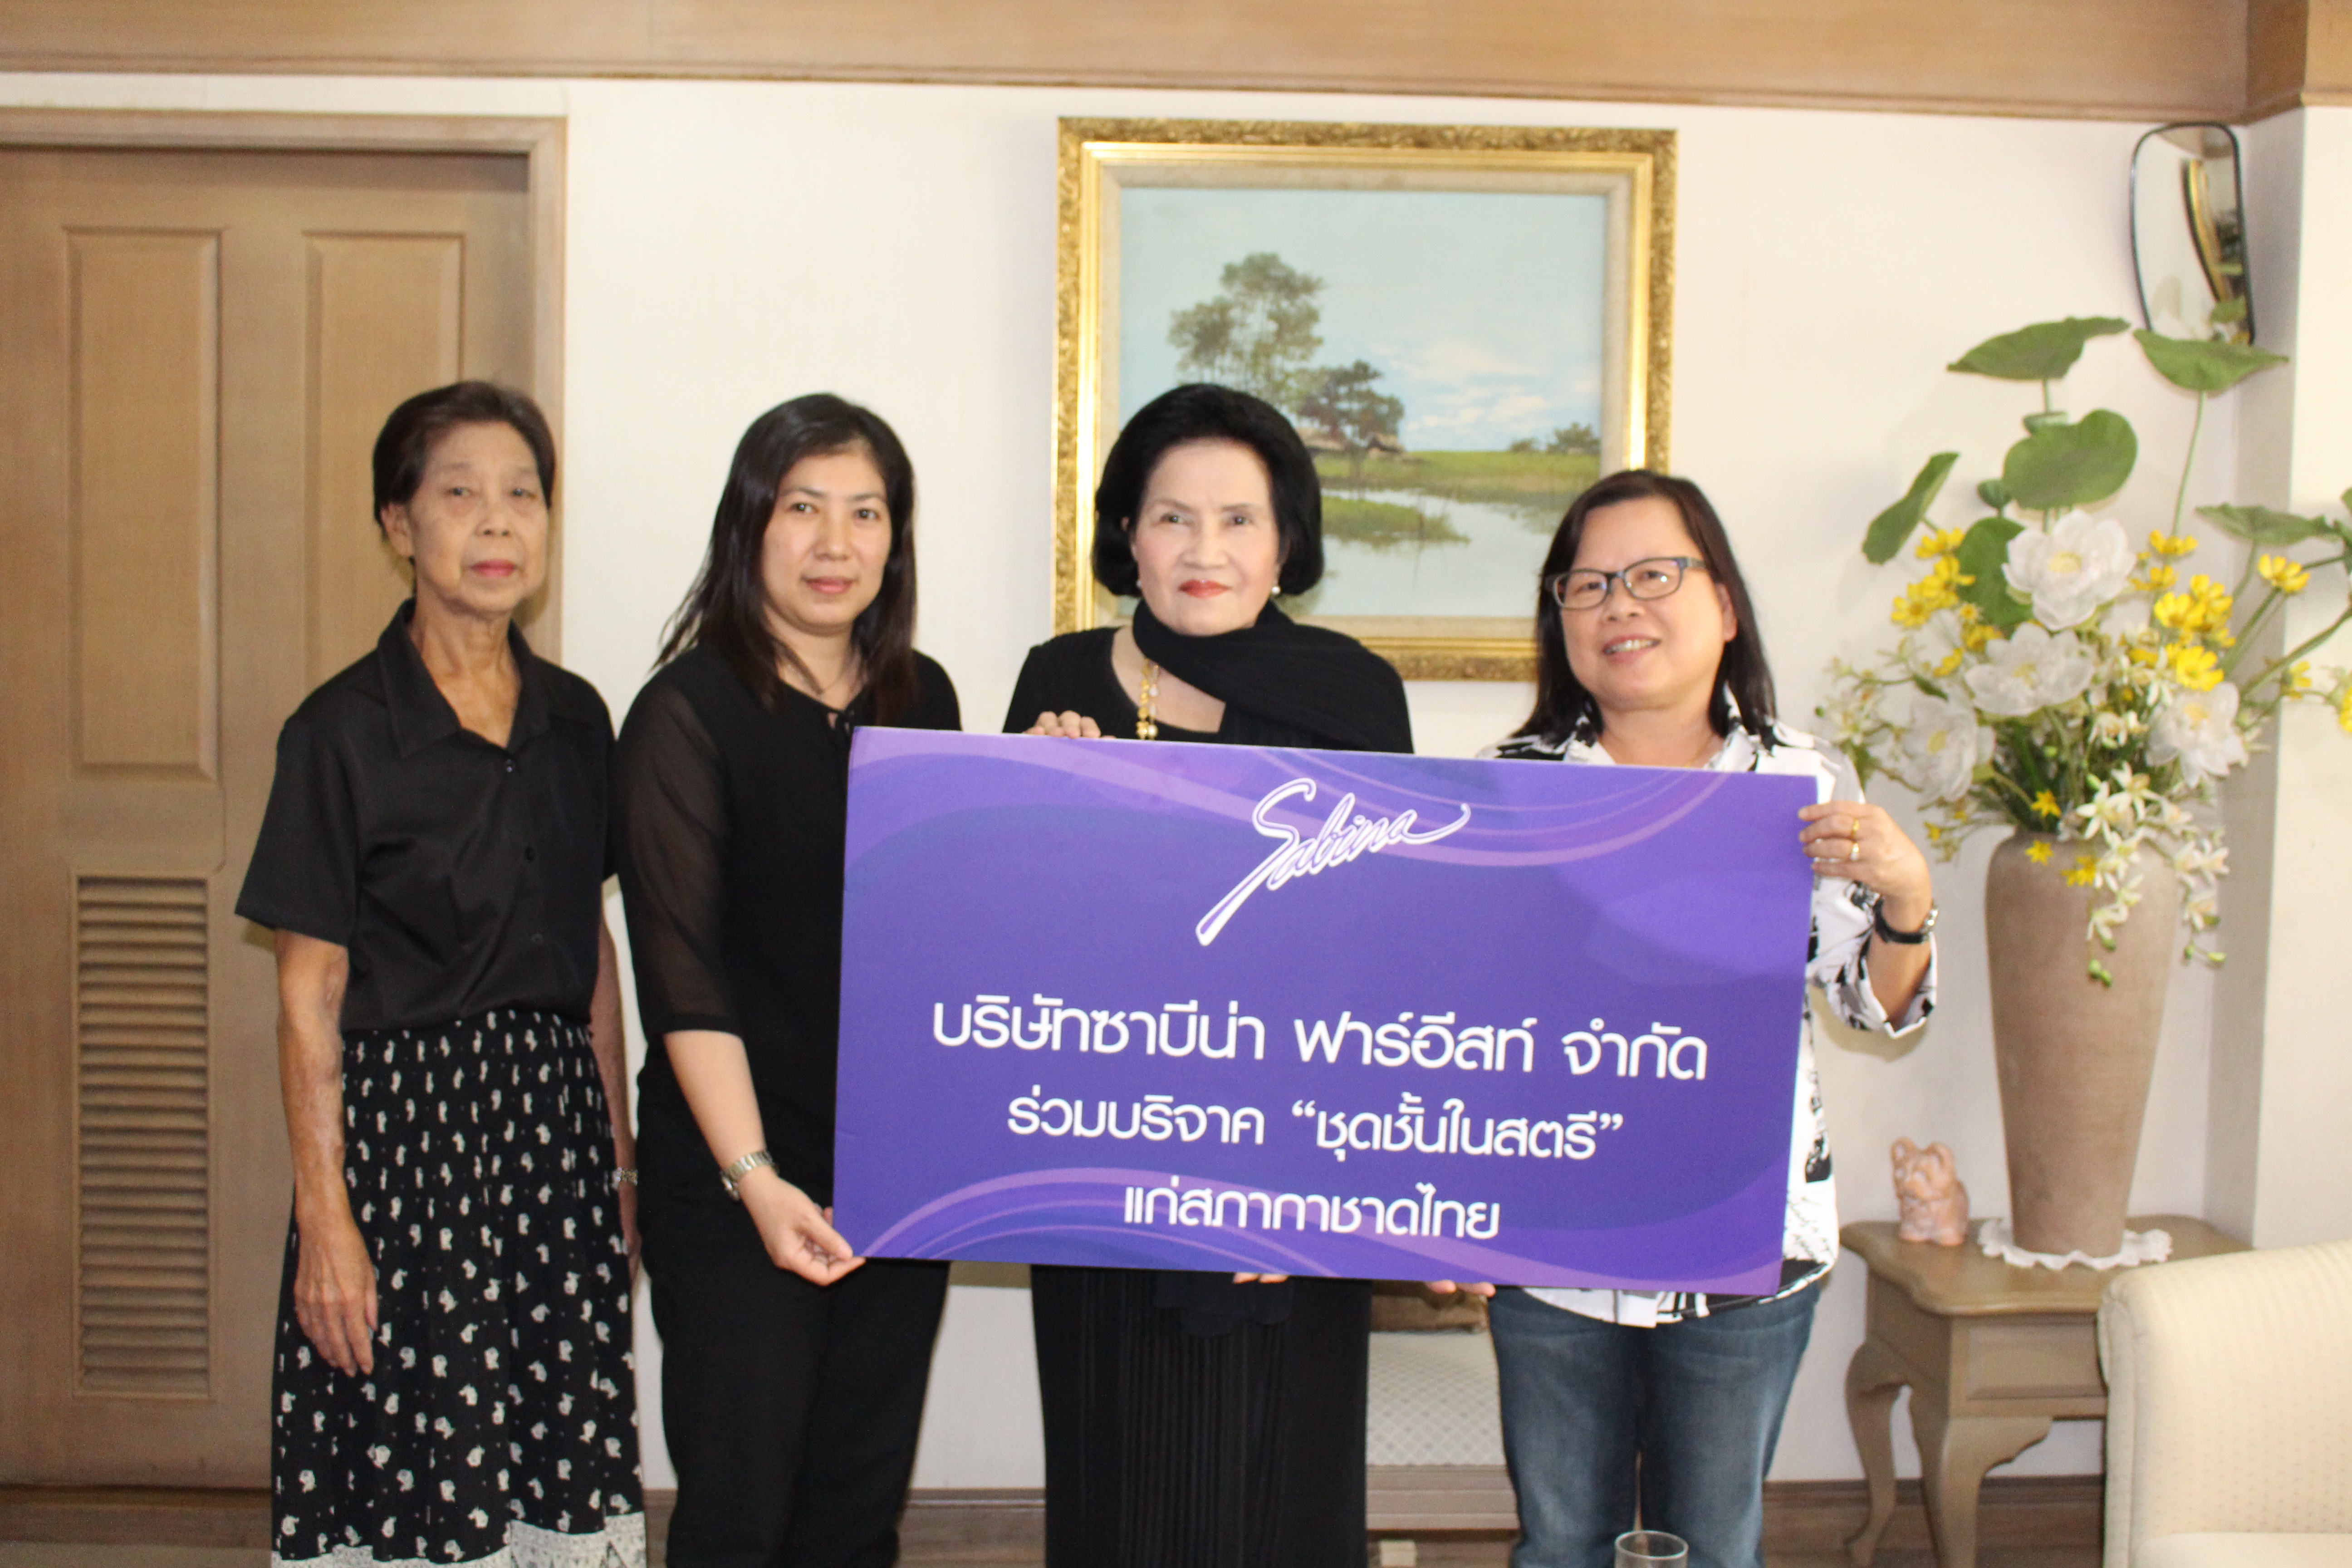 บริษัทซาบีน่า ฟาร์อีสท์ จำกัด มอบชุดชั้นในสตรีแก่สภากาชาดไทย (ครั้งที่ 1/2560)